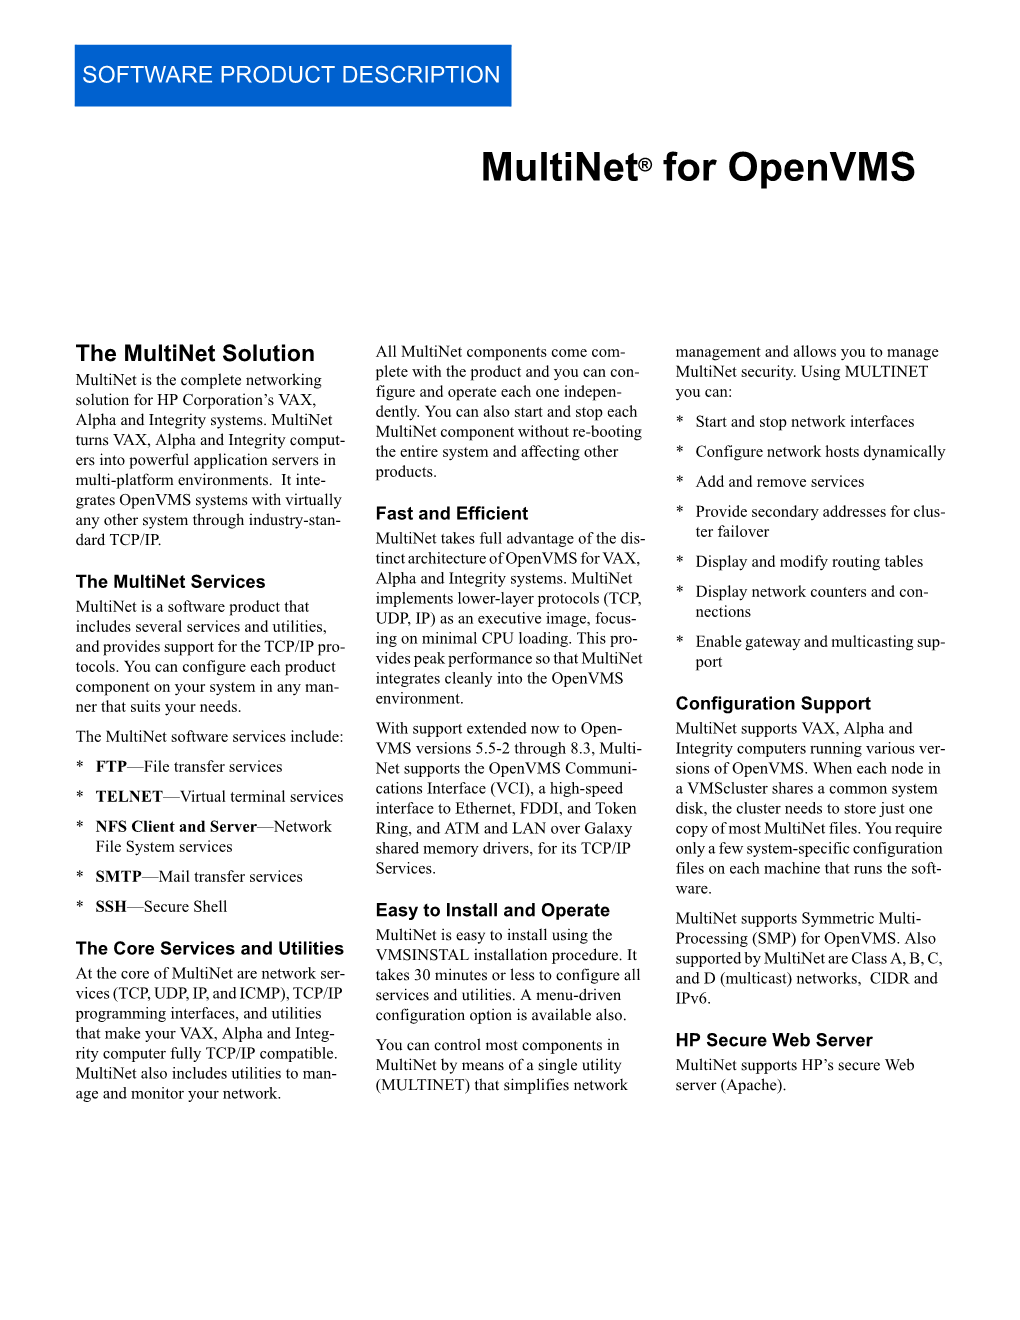 Multinet Software Product Description (PDF)